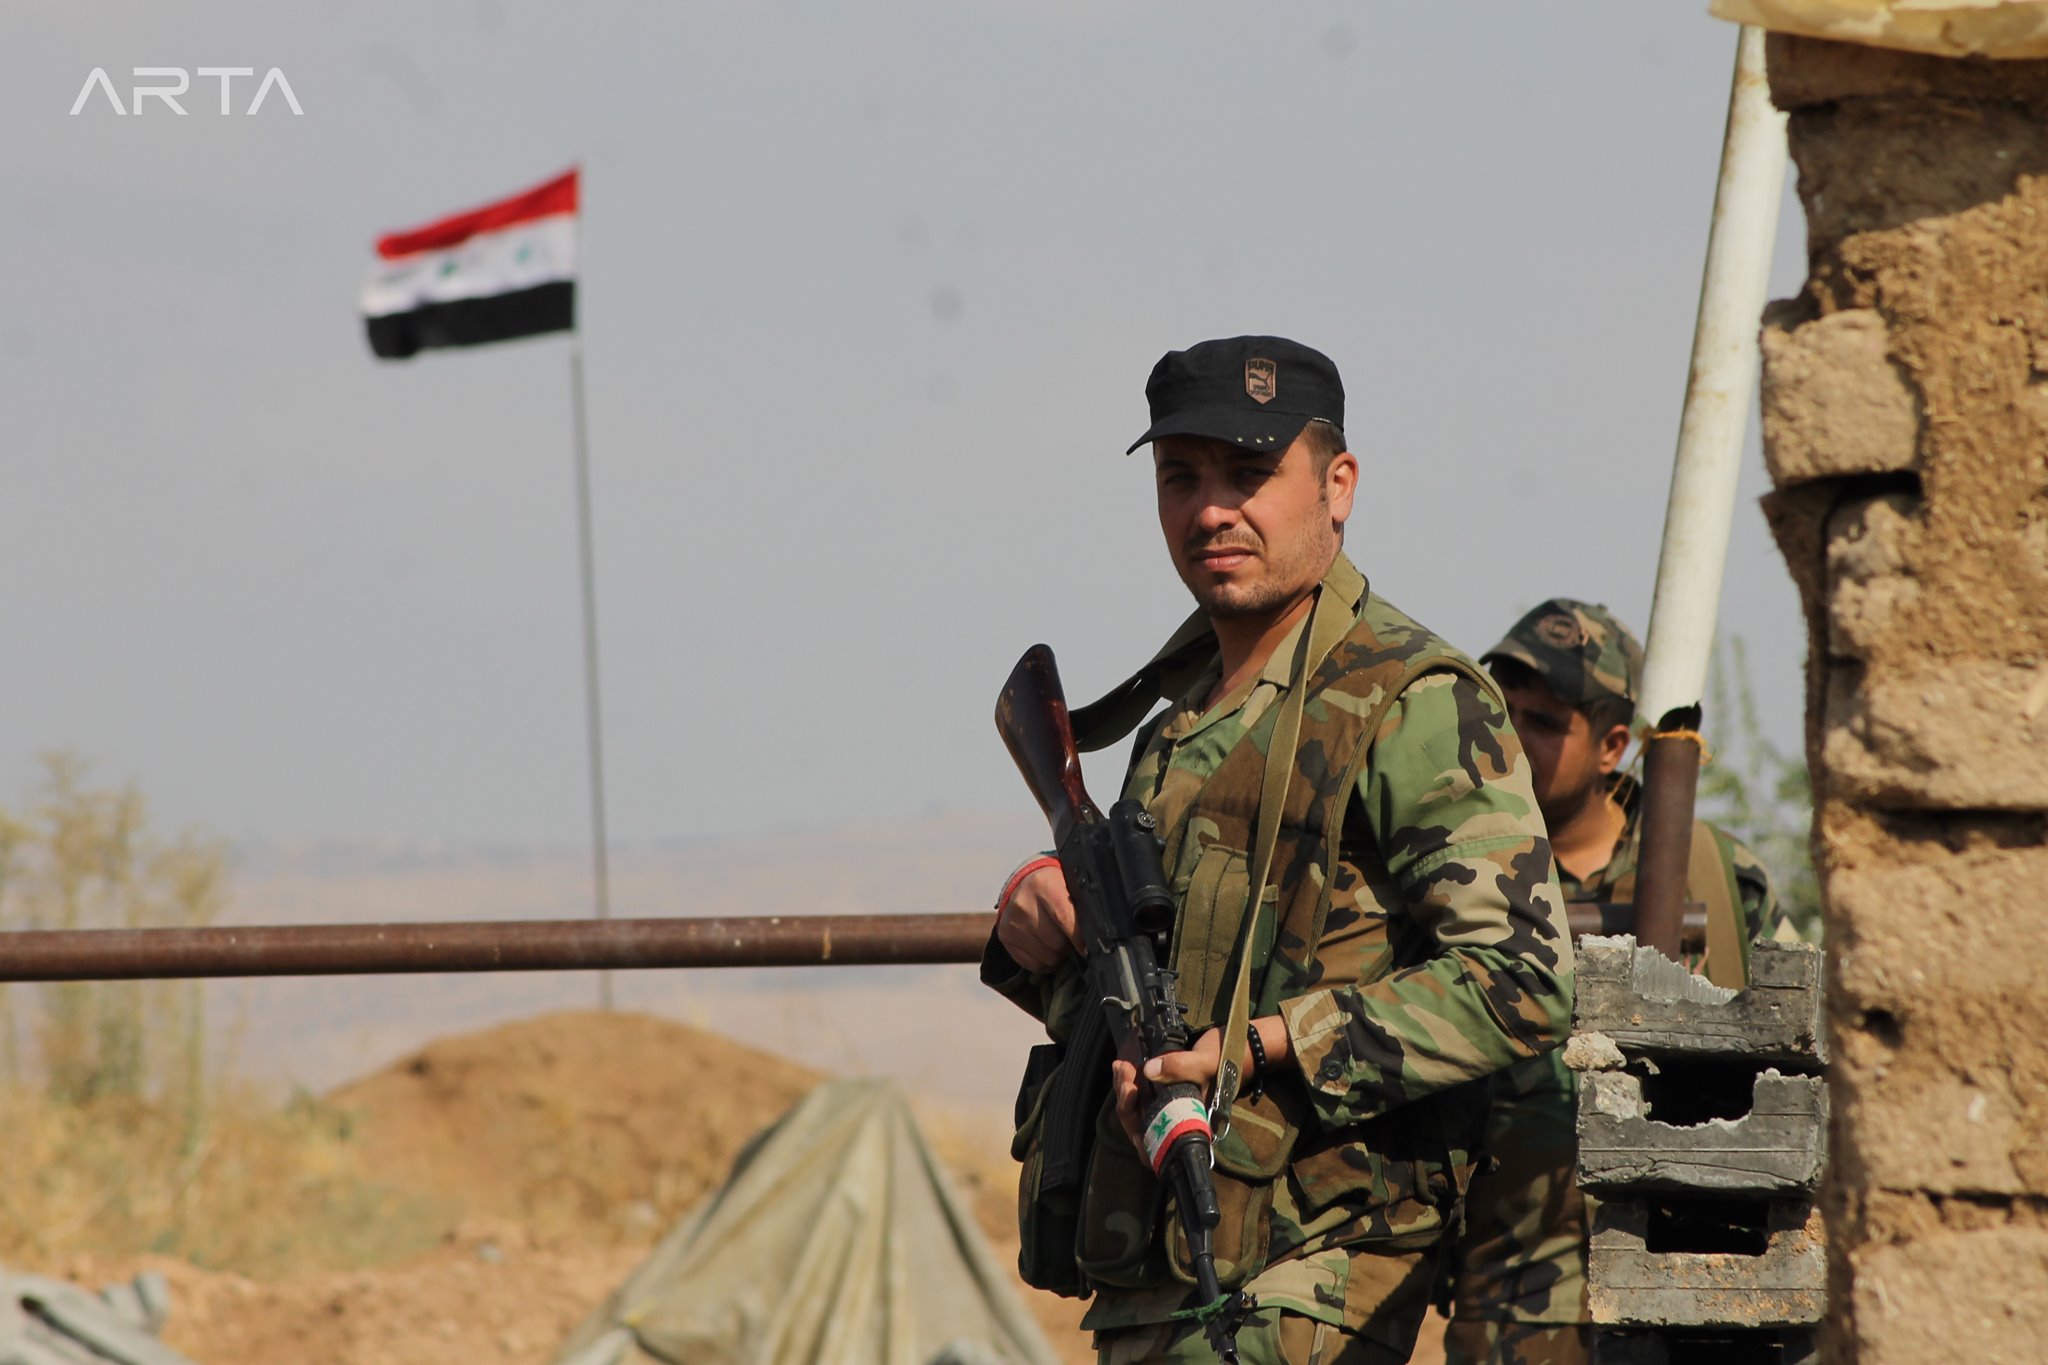 عناصر من قوات النظام السوري في أثناء انتشارهم بمدينة عامودا - 28 من تشرين الأول 2019 (آرتا إف إم)